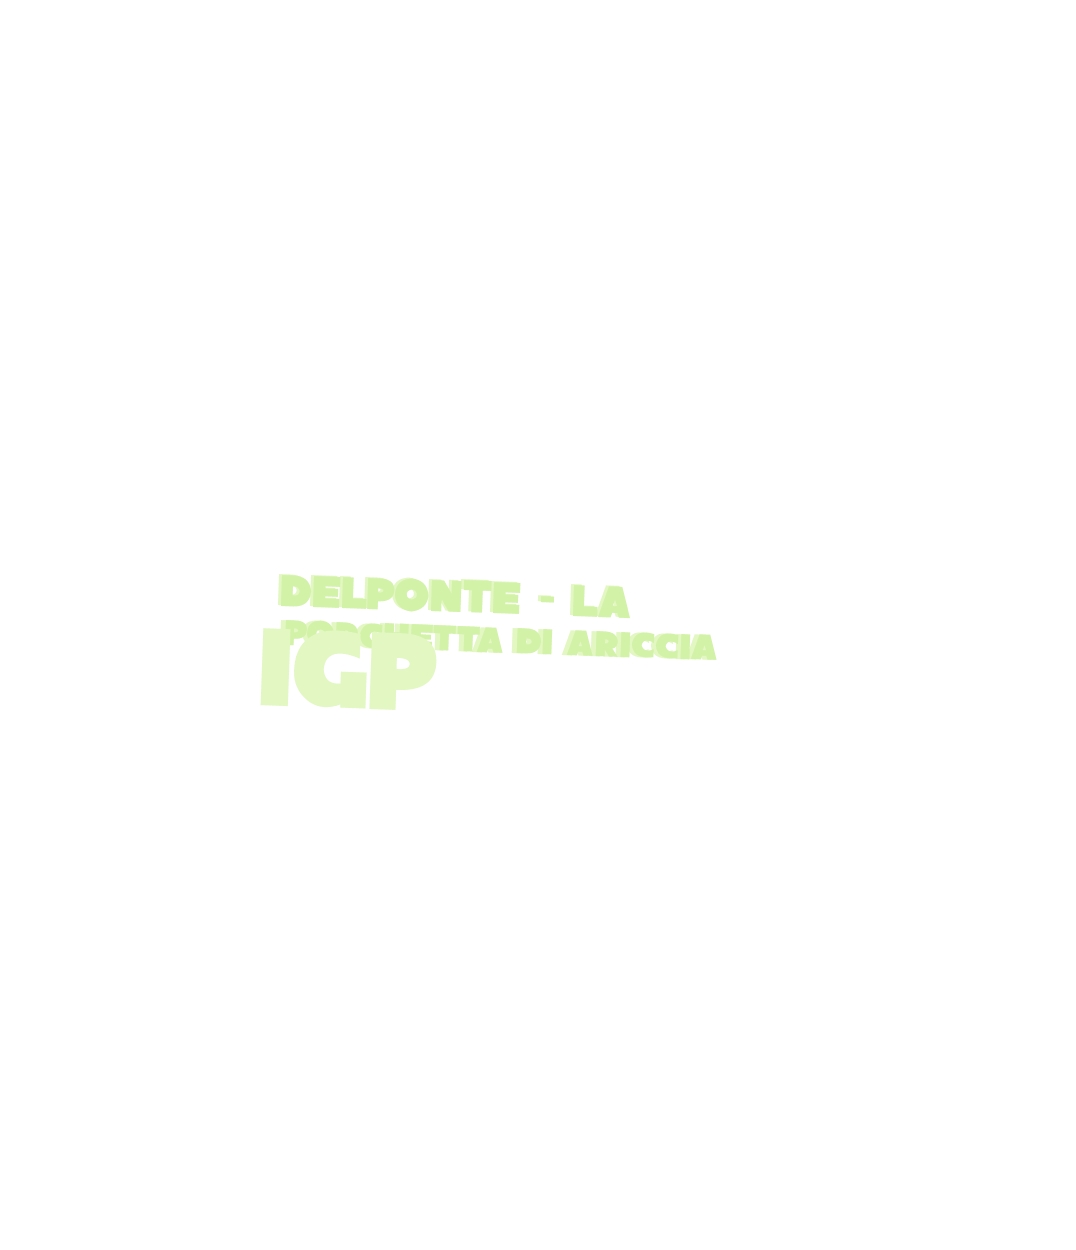 logo delPonte - La Porchetta di Ariccia IGP